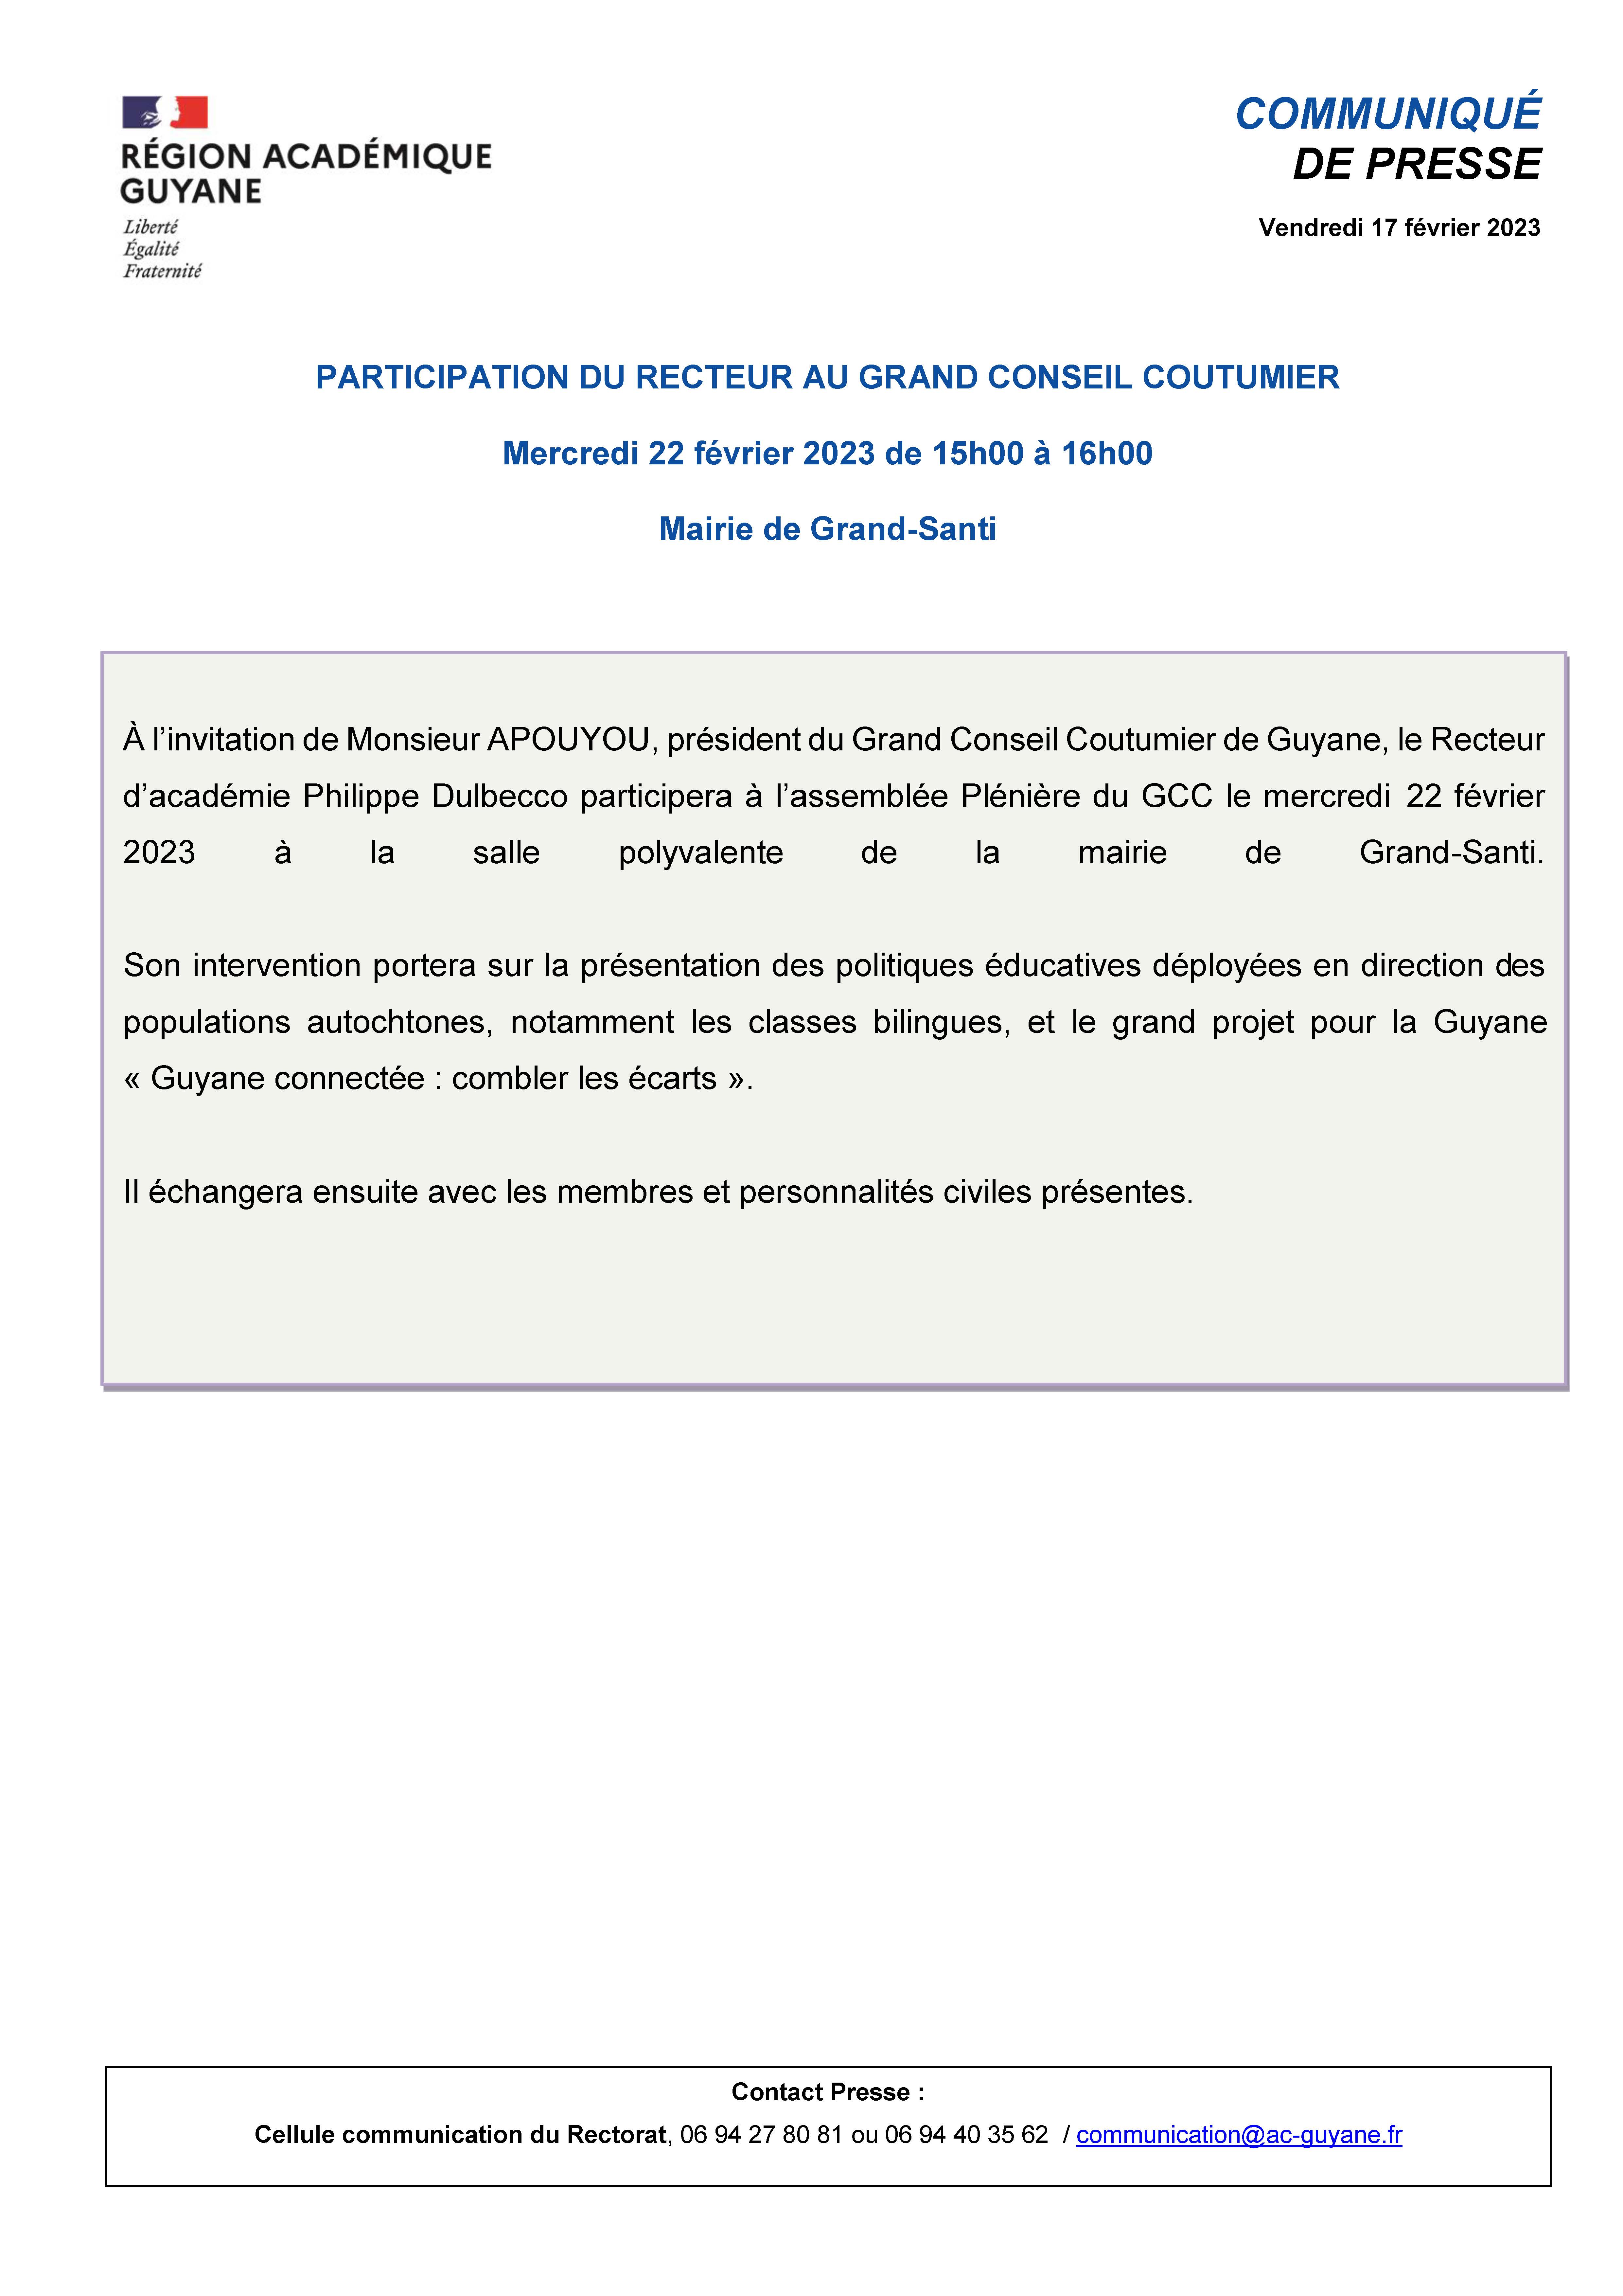 [CP] Participation du Recteur au Grand Conseil Coutumier - mercredi 22 février 2023 - 16022023